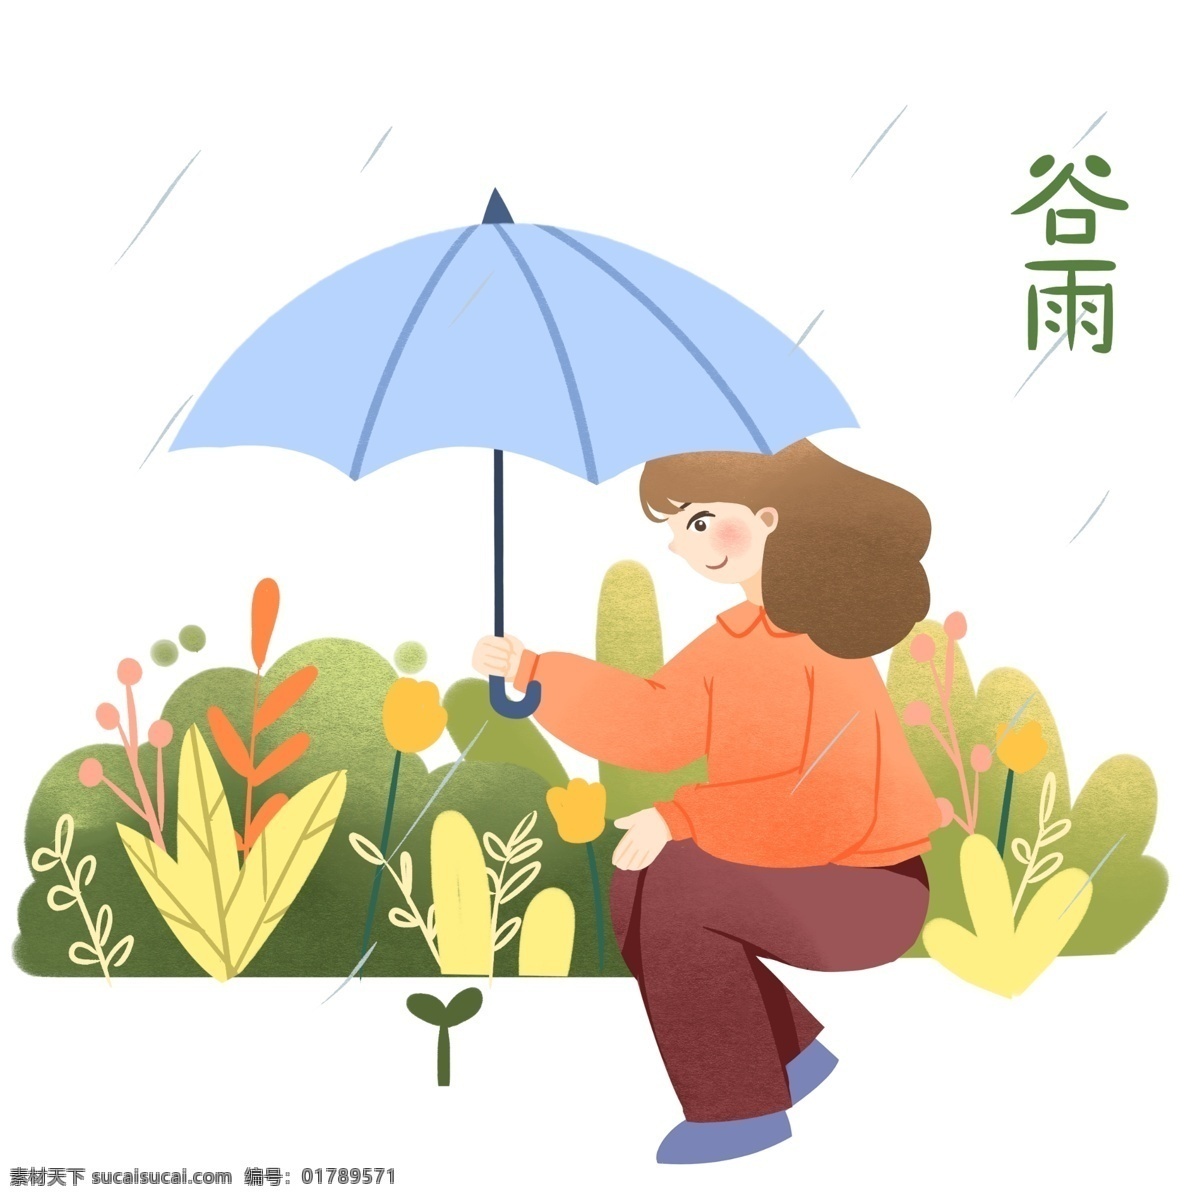 谷雨 节气 爱护 小草 插画 爱心的女孩 卡通插画 谷雨节气 谷雨插画 下雨天气 二十四节气 蓝色的雨伞